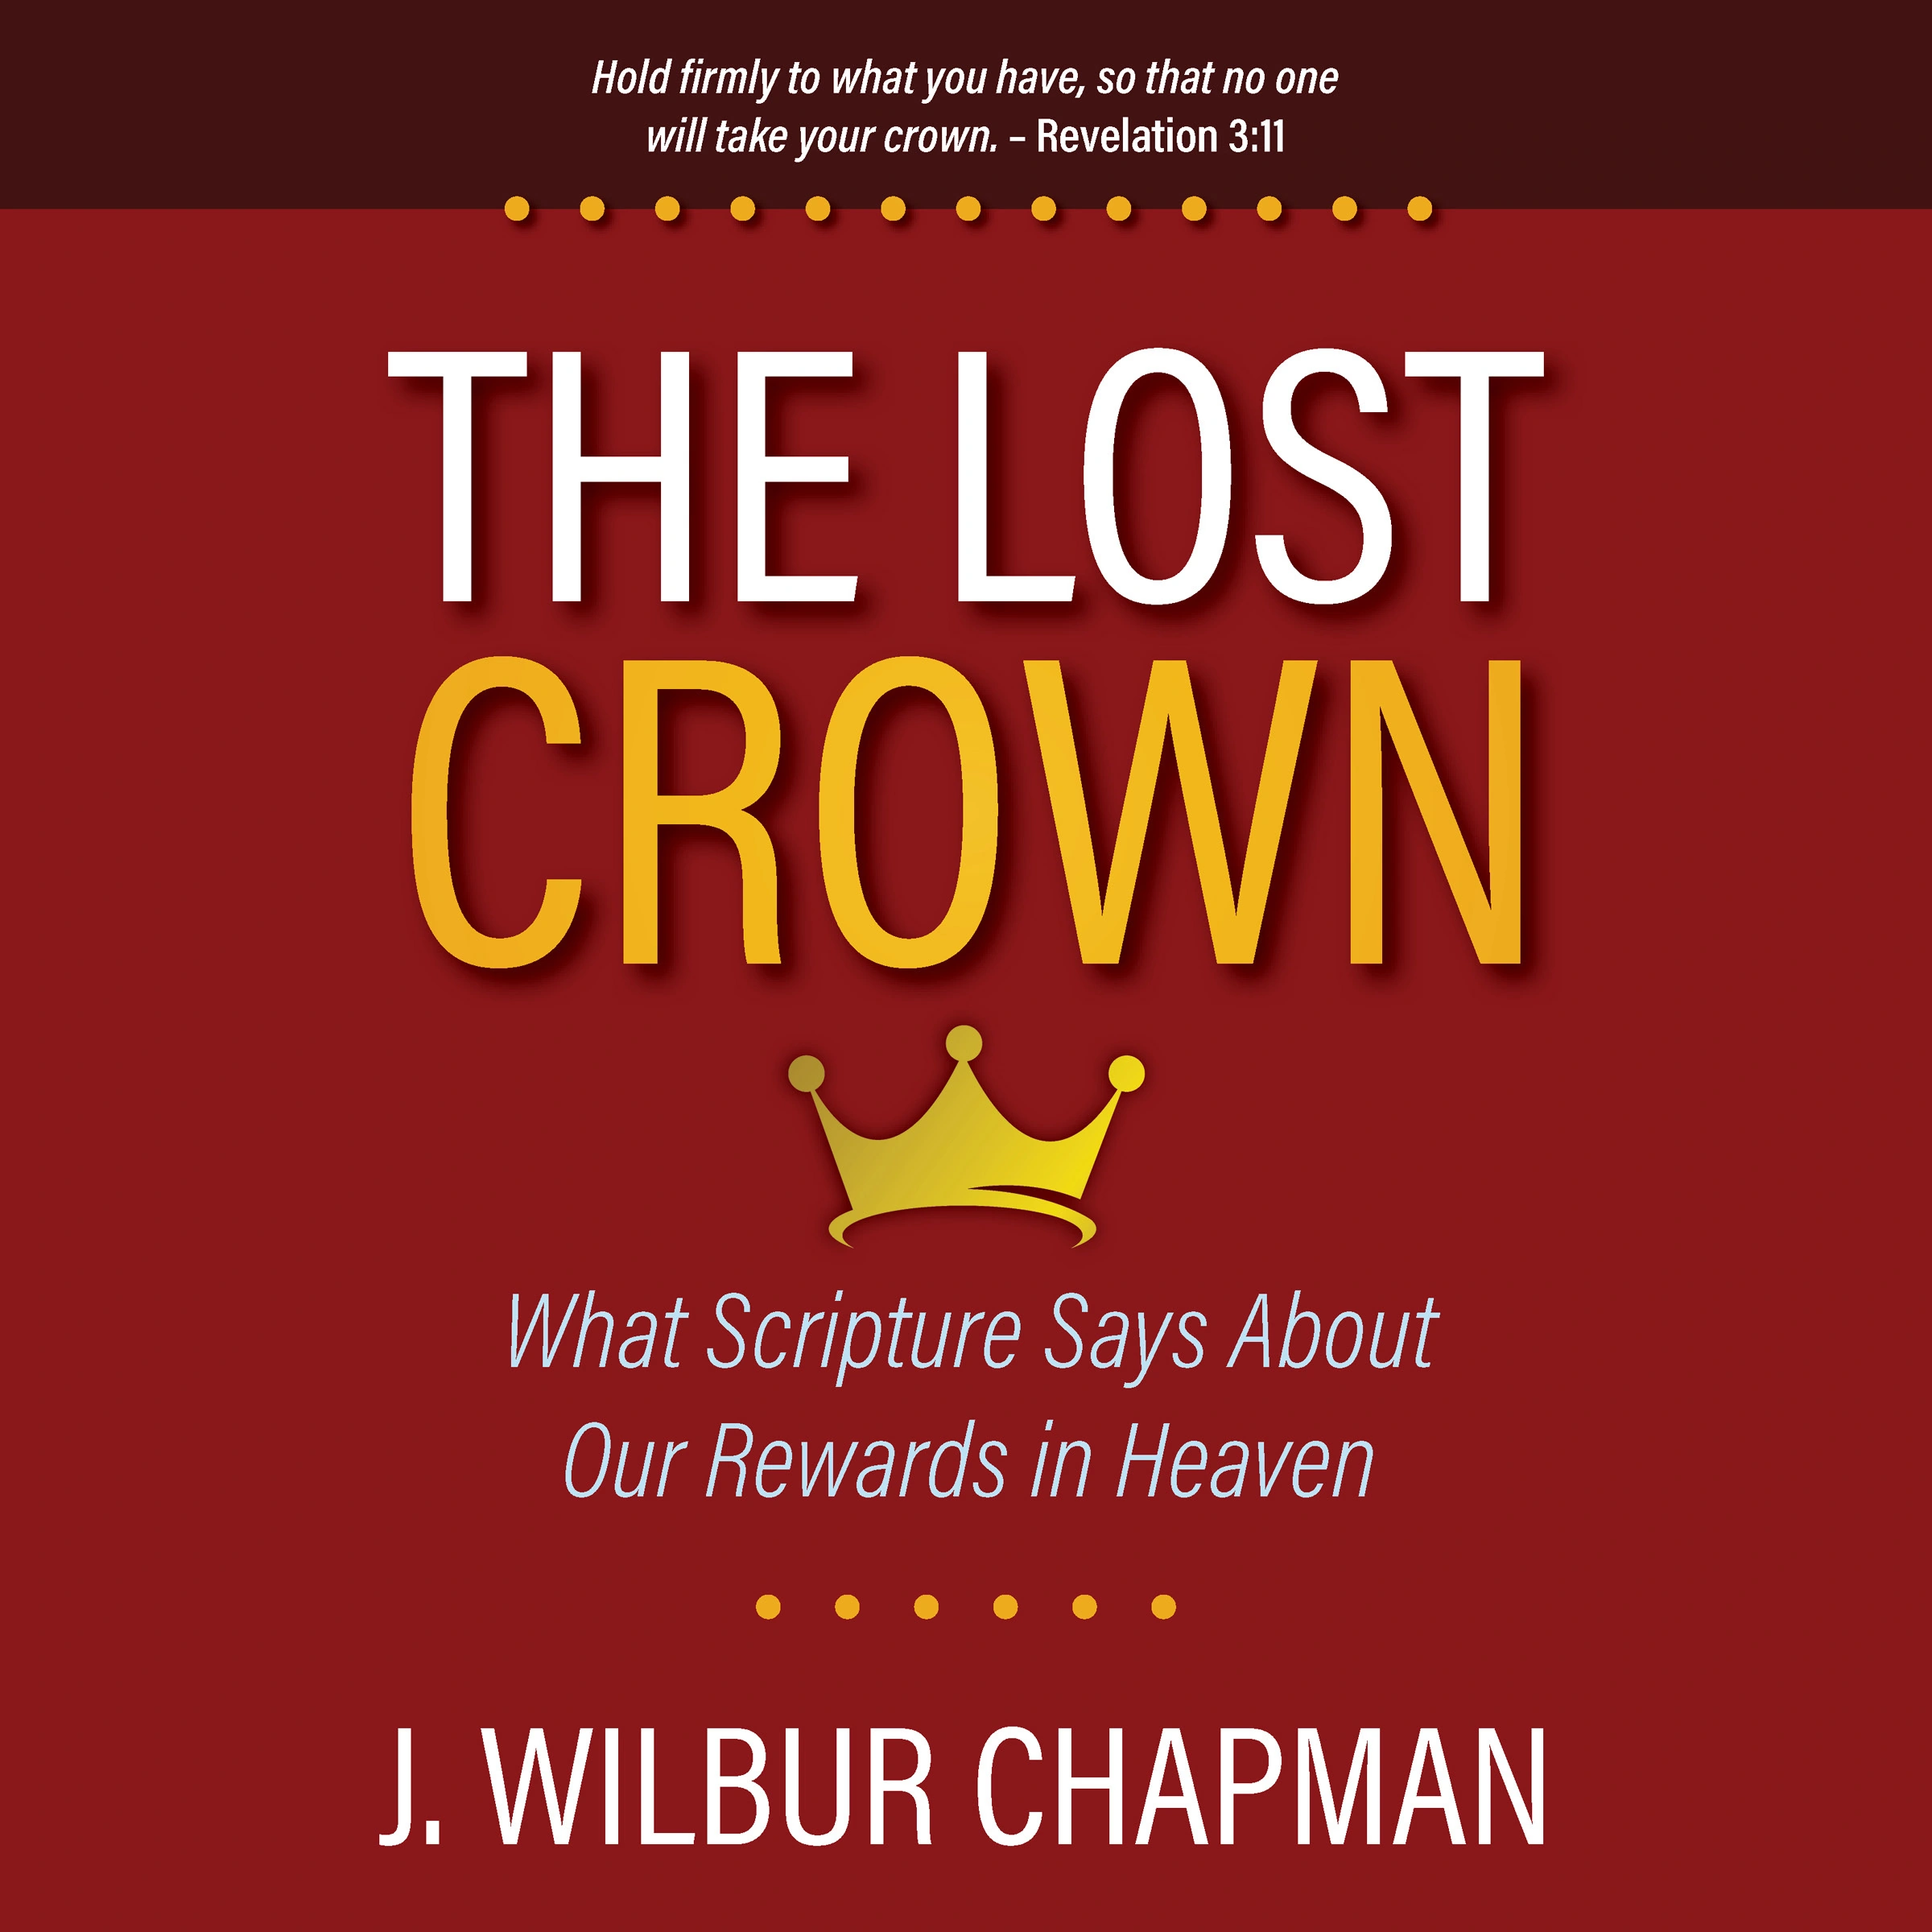 The Lost Crown by J. Wilbur Chapman Audiobook